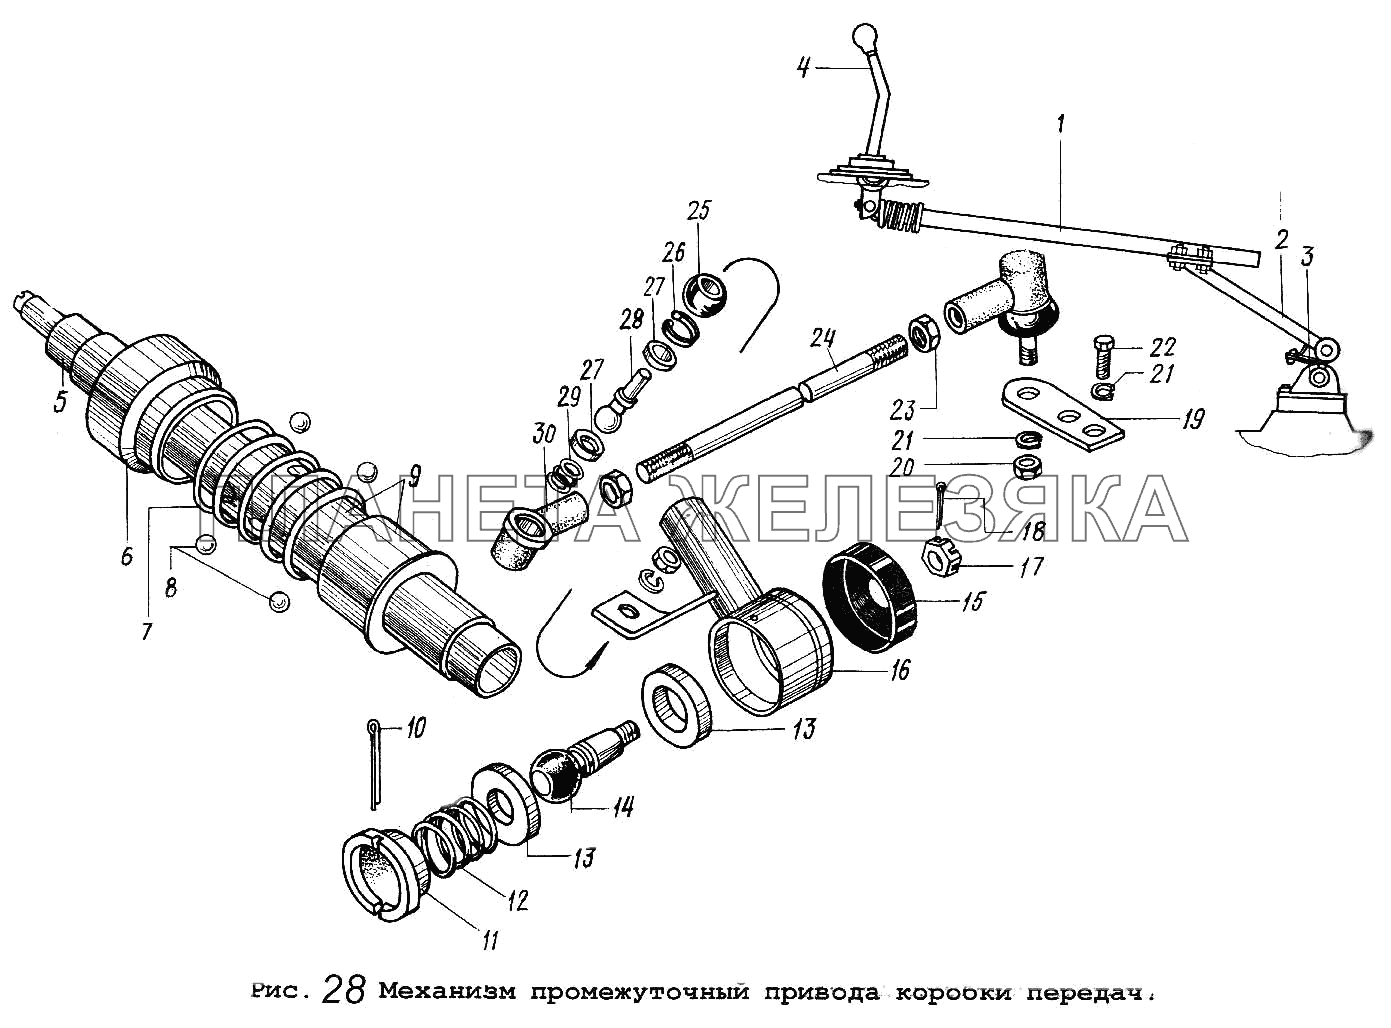 Механизм промежуточный привода коробки передач МАЗ-53371